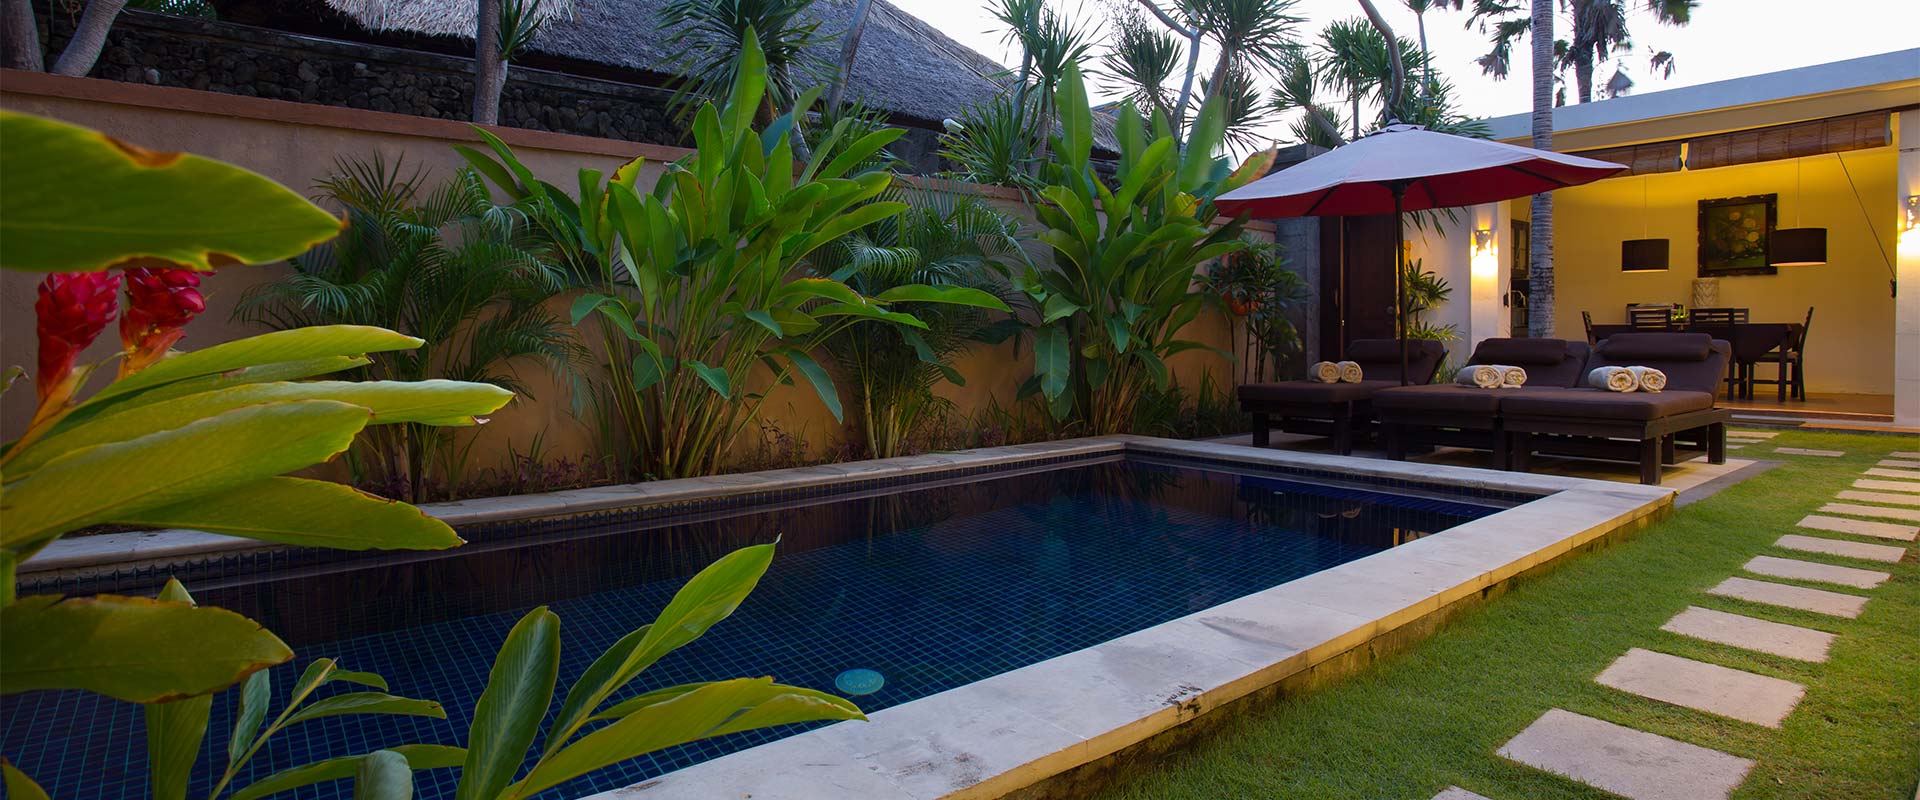 3 Bedrooms Bali Yubi Villas